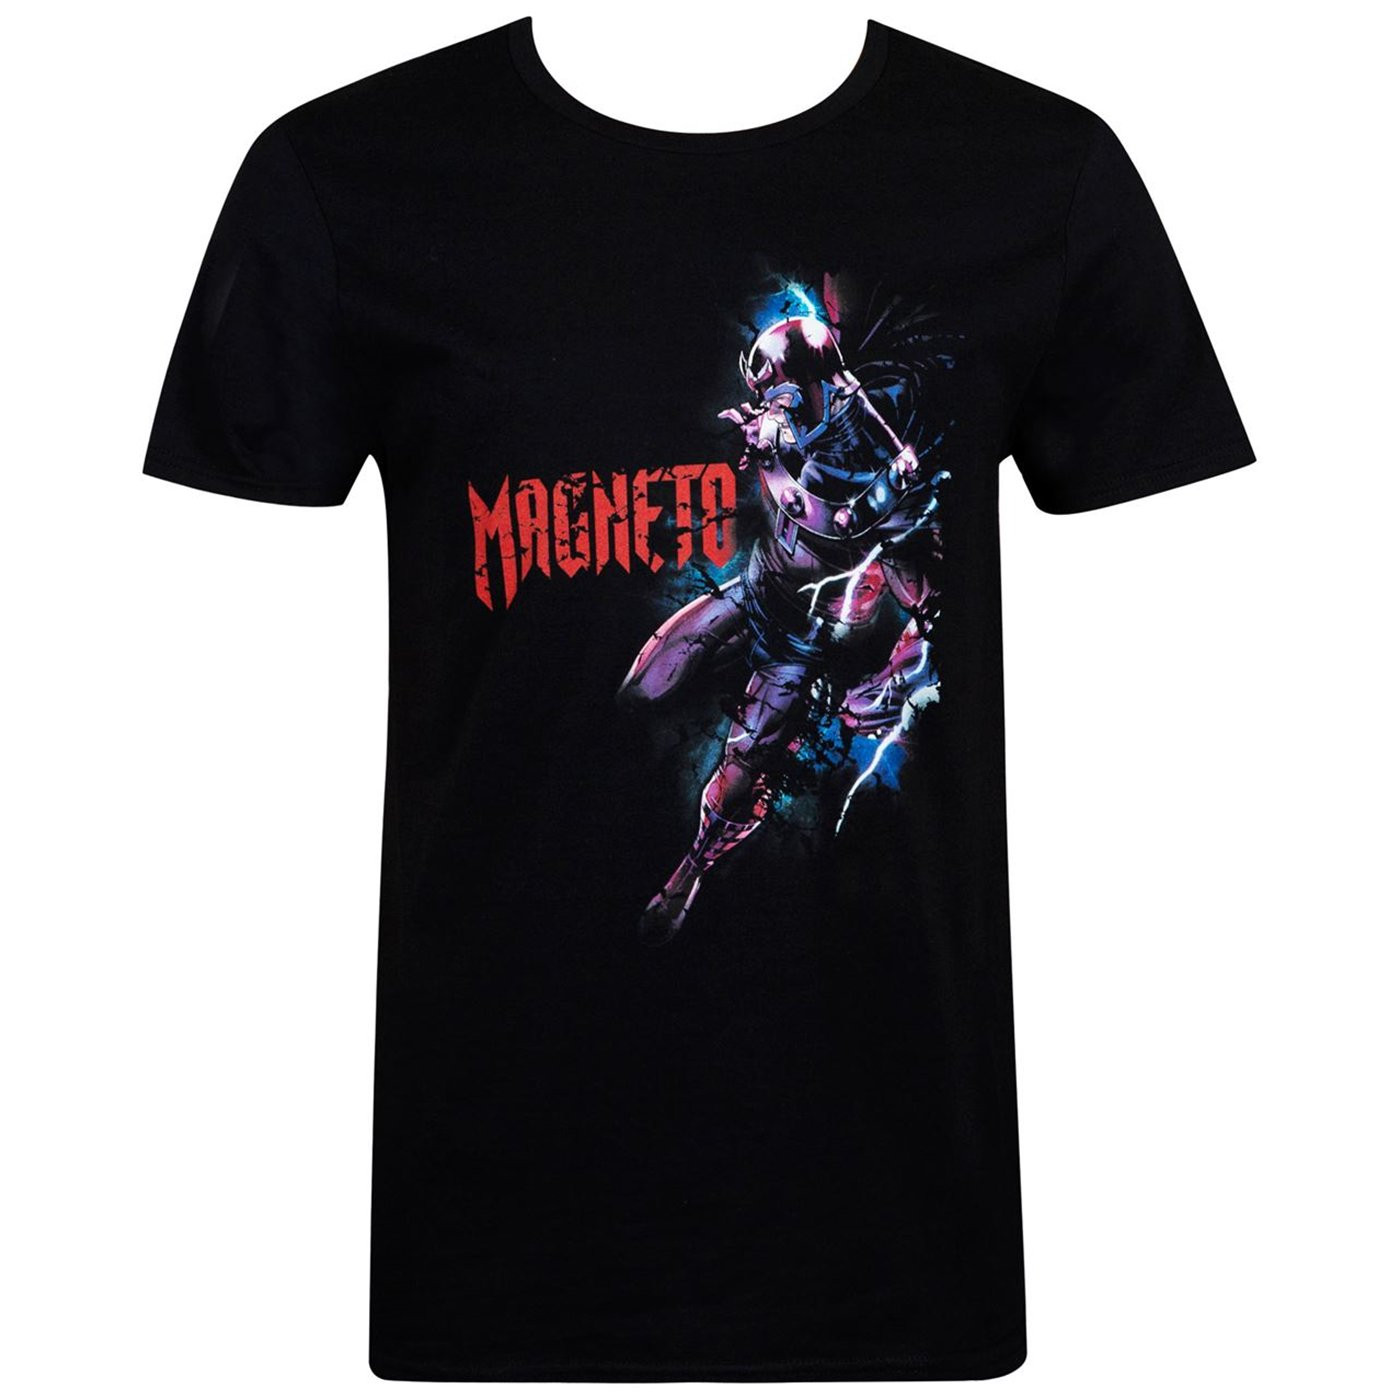 Marvel Magneto Men's T-Shirt